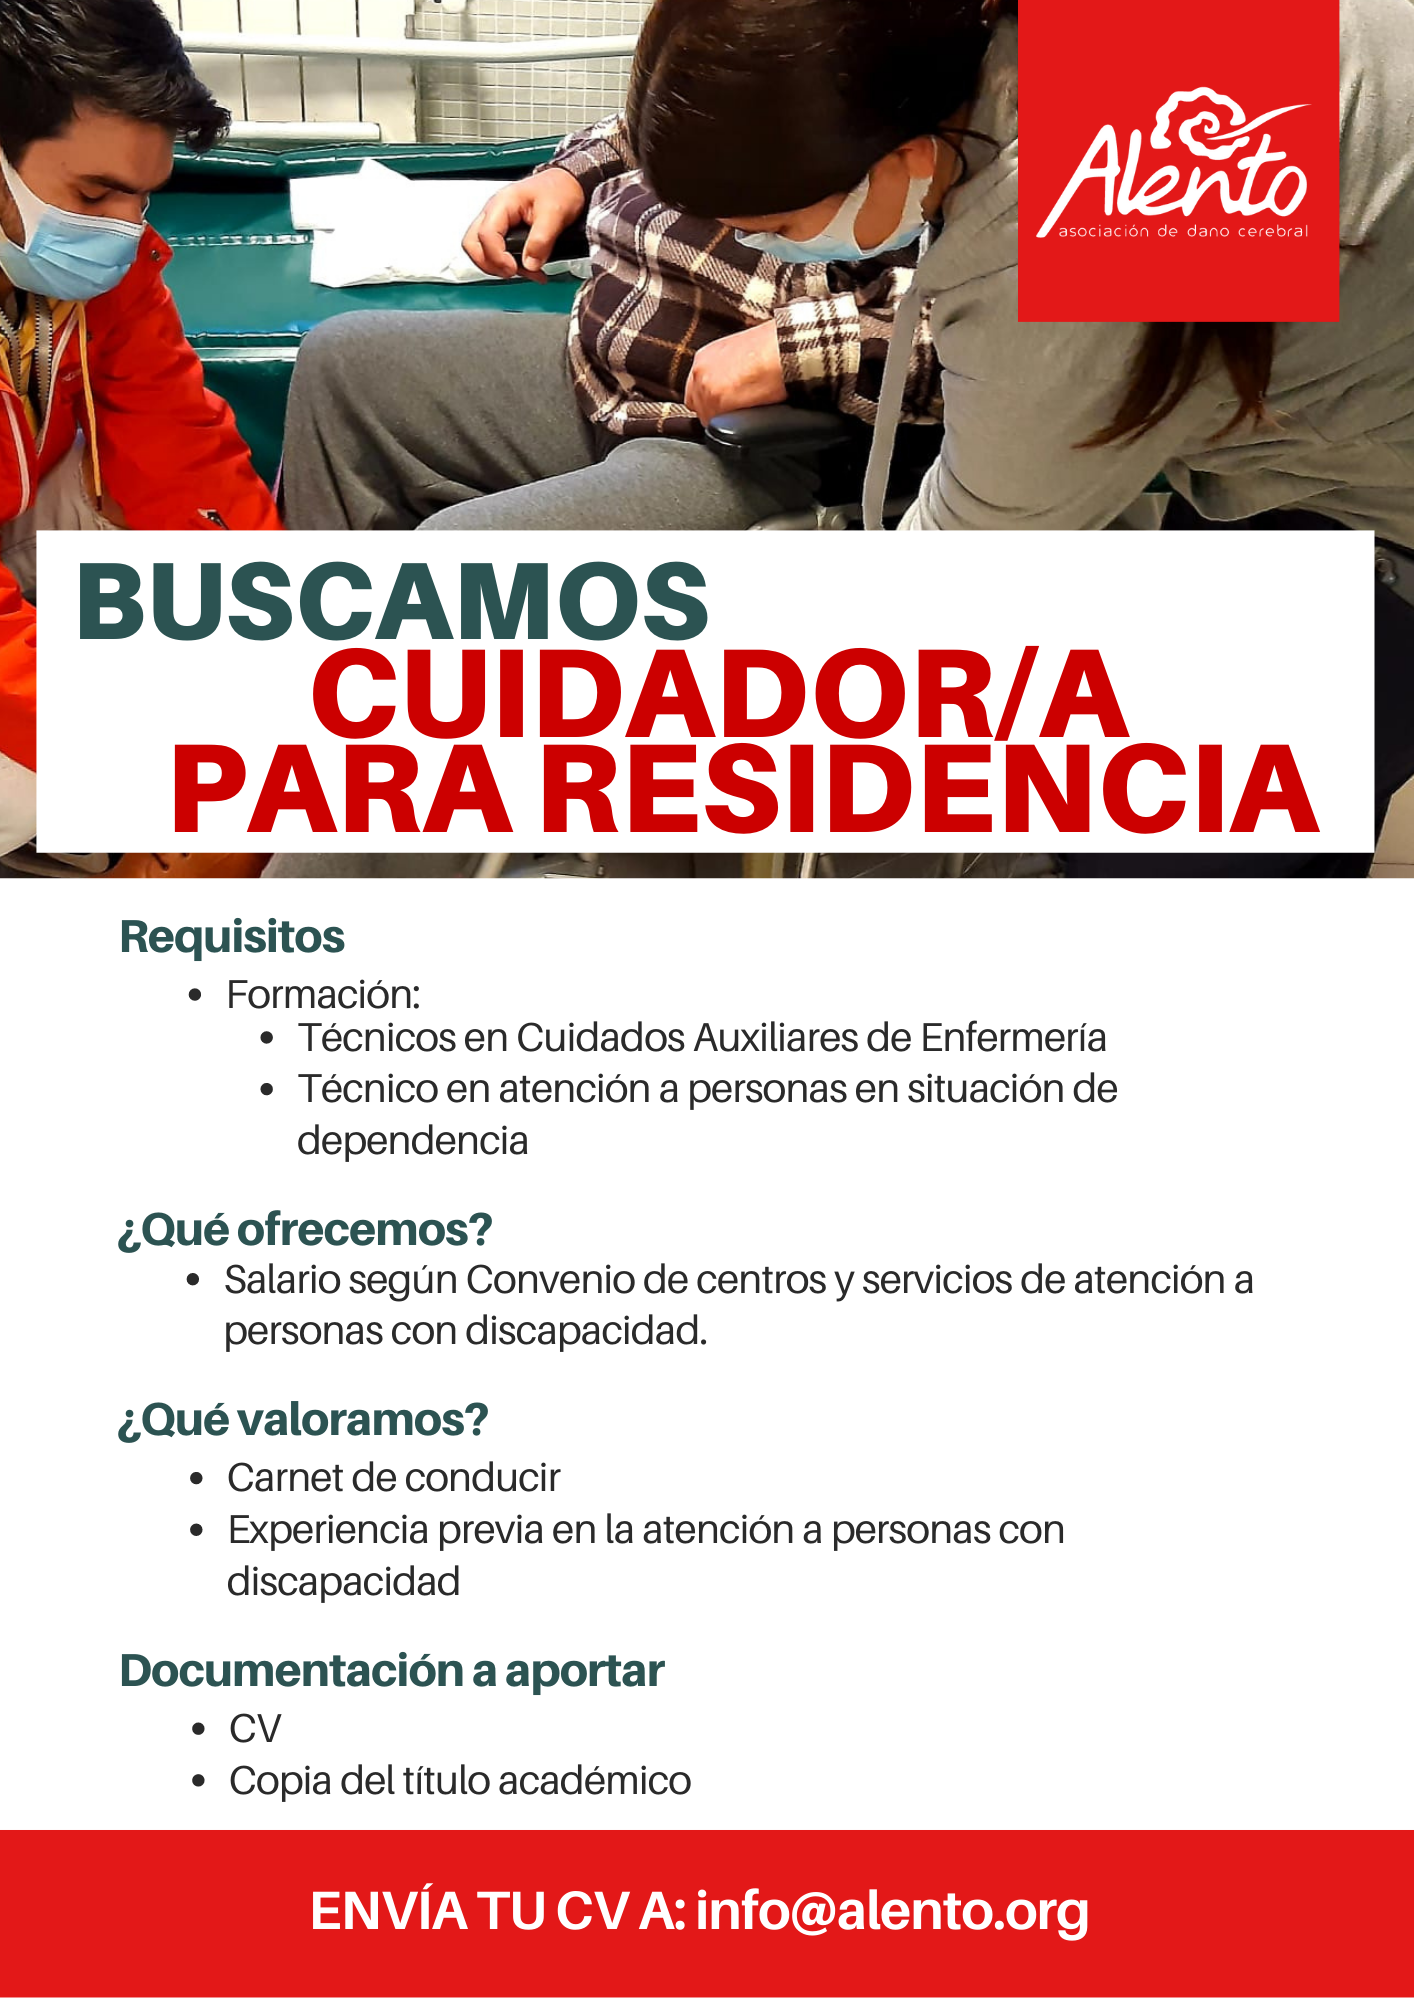 Oferta de empleo en Asociación ALENTO de Vigo. Puesto de cuidador para servicio residencial